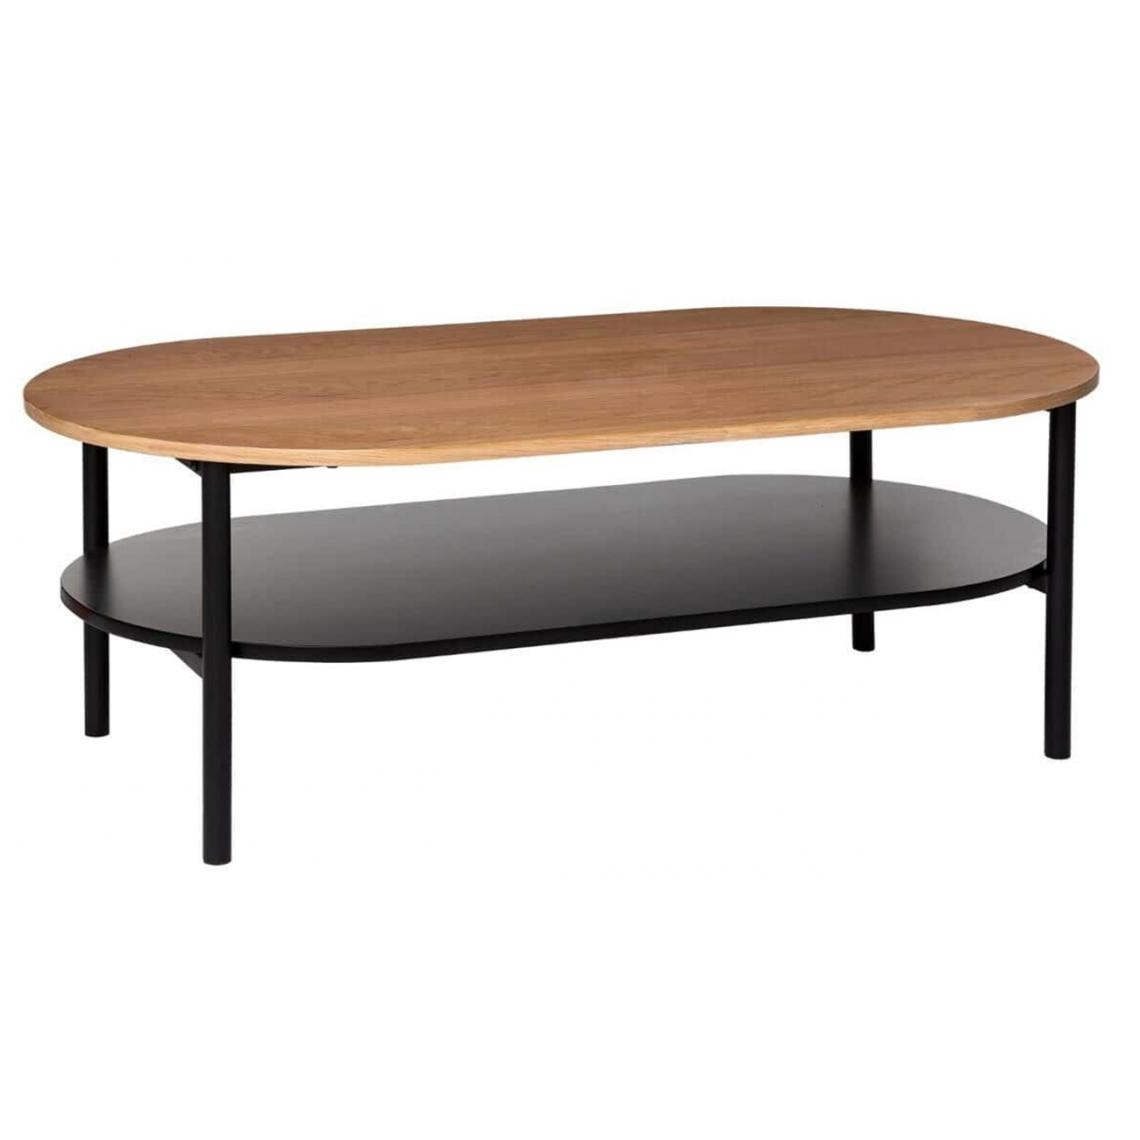 Pegane - Table basse en métal et chêne - Longueur 110 x Profondeur 60 x Hauteur 39 cm - Tables basses